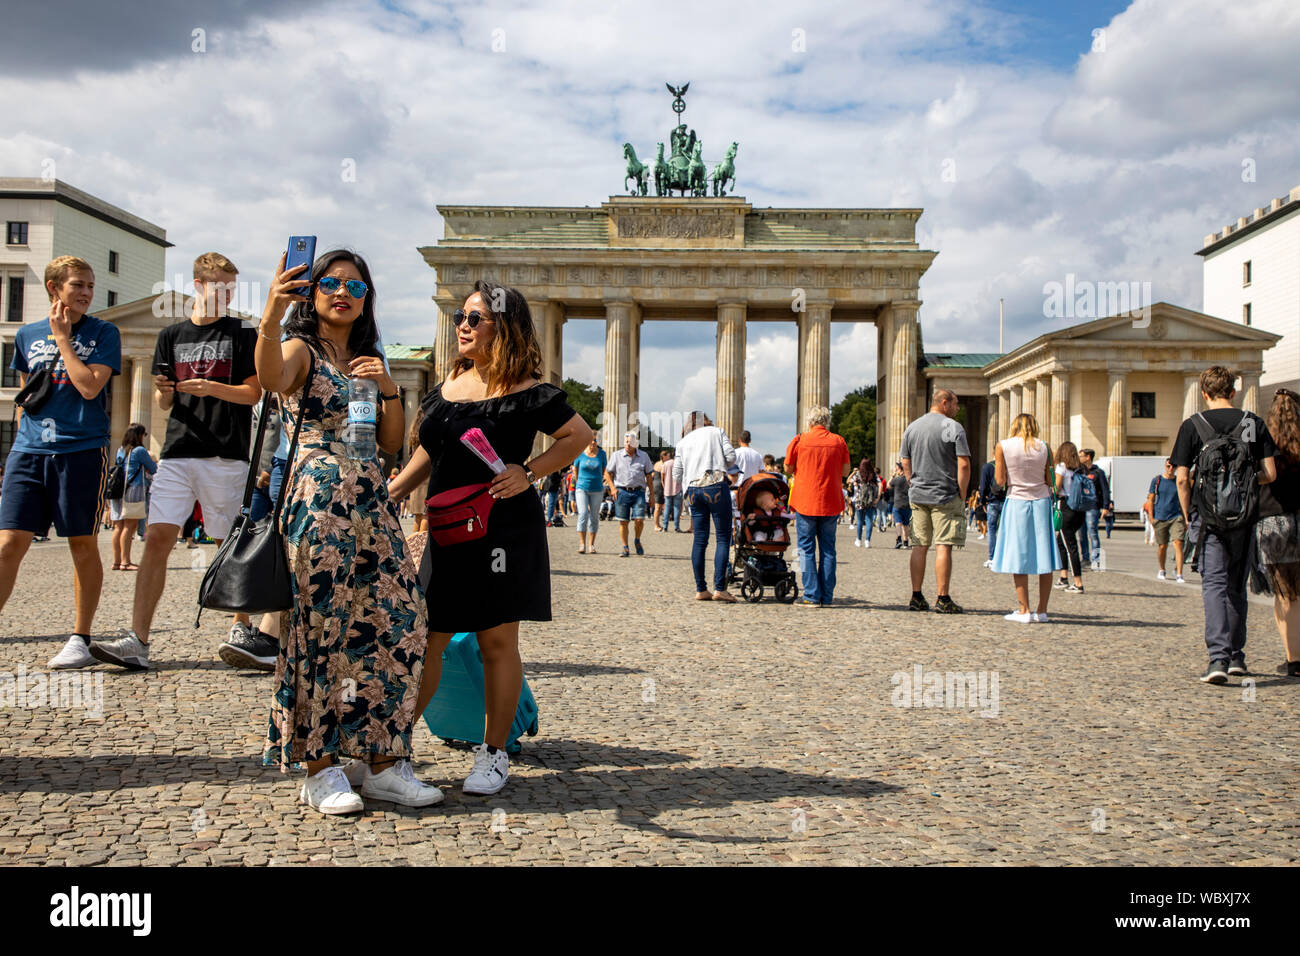 Turisti e visitatori presso la Porta di Brandeburgo, Berlino Foto Stock